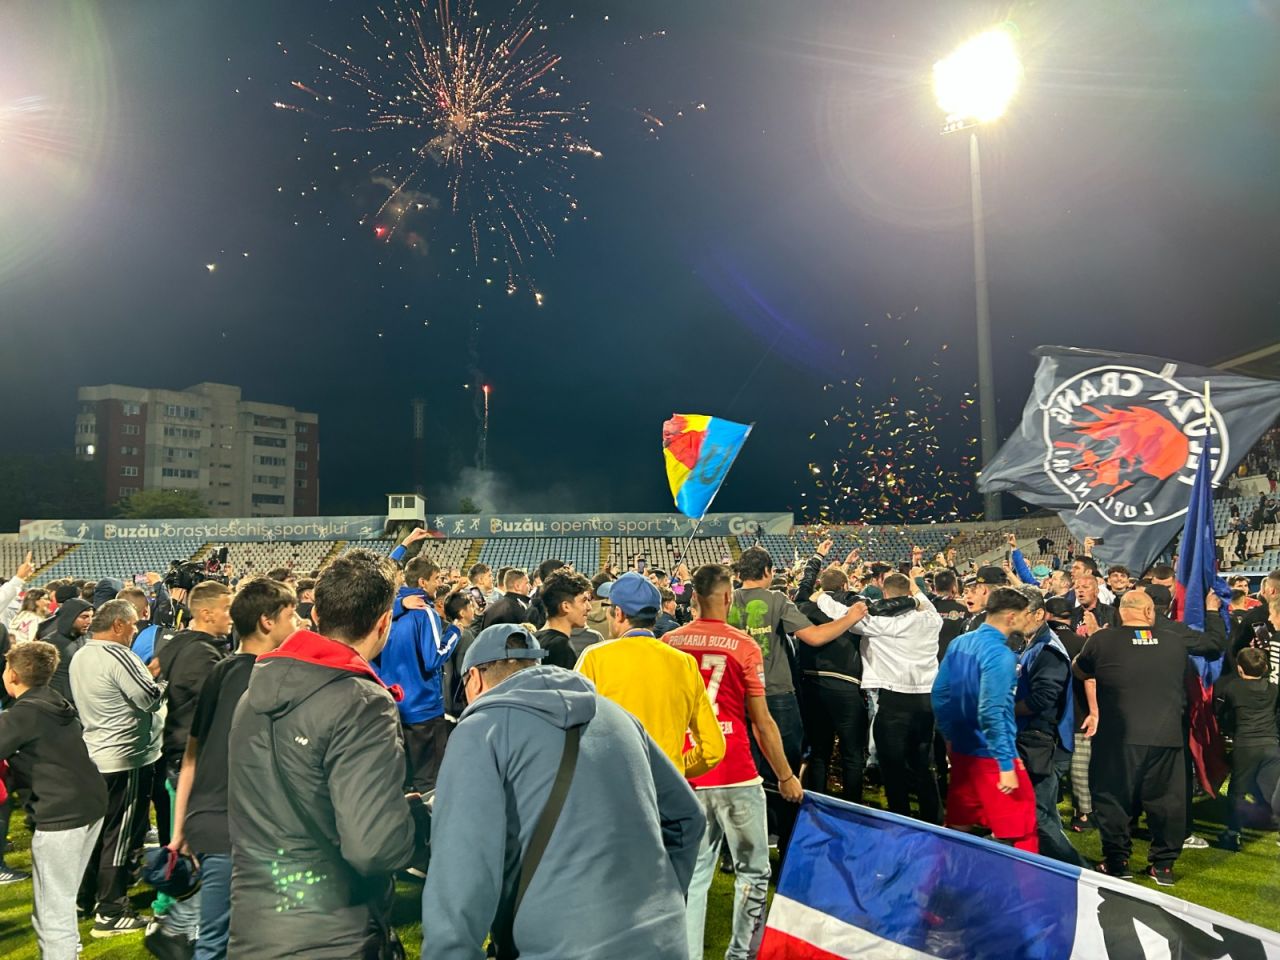 Sărbătoare la Buzău! Fotbaliștii s-au bucurat alături de fani în urma promovării istorice. Vali Dumitrache: ”Am muncit un an pentru asta”_5